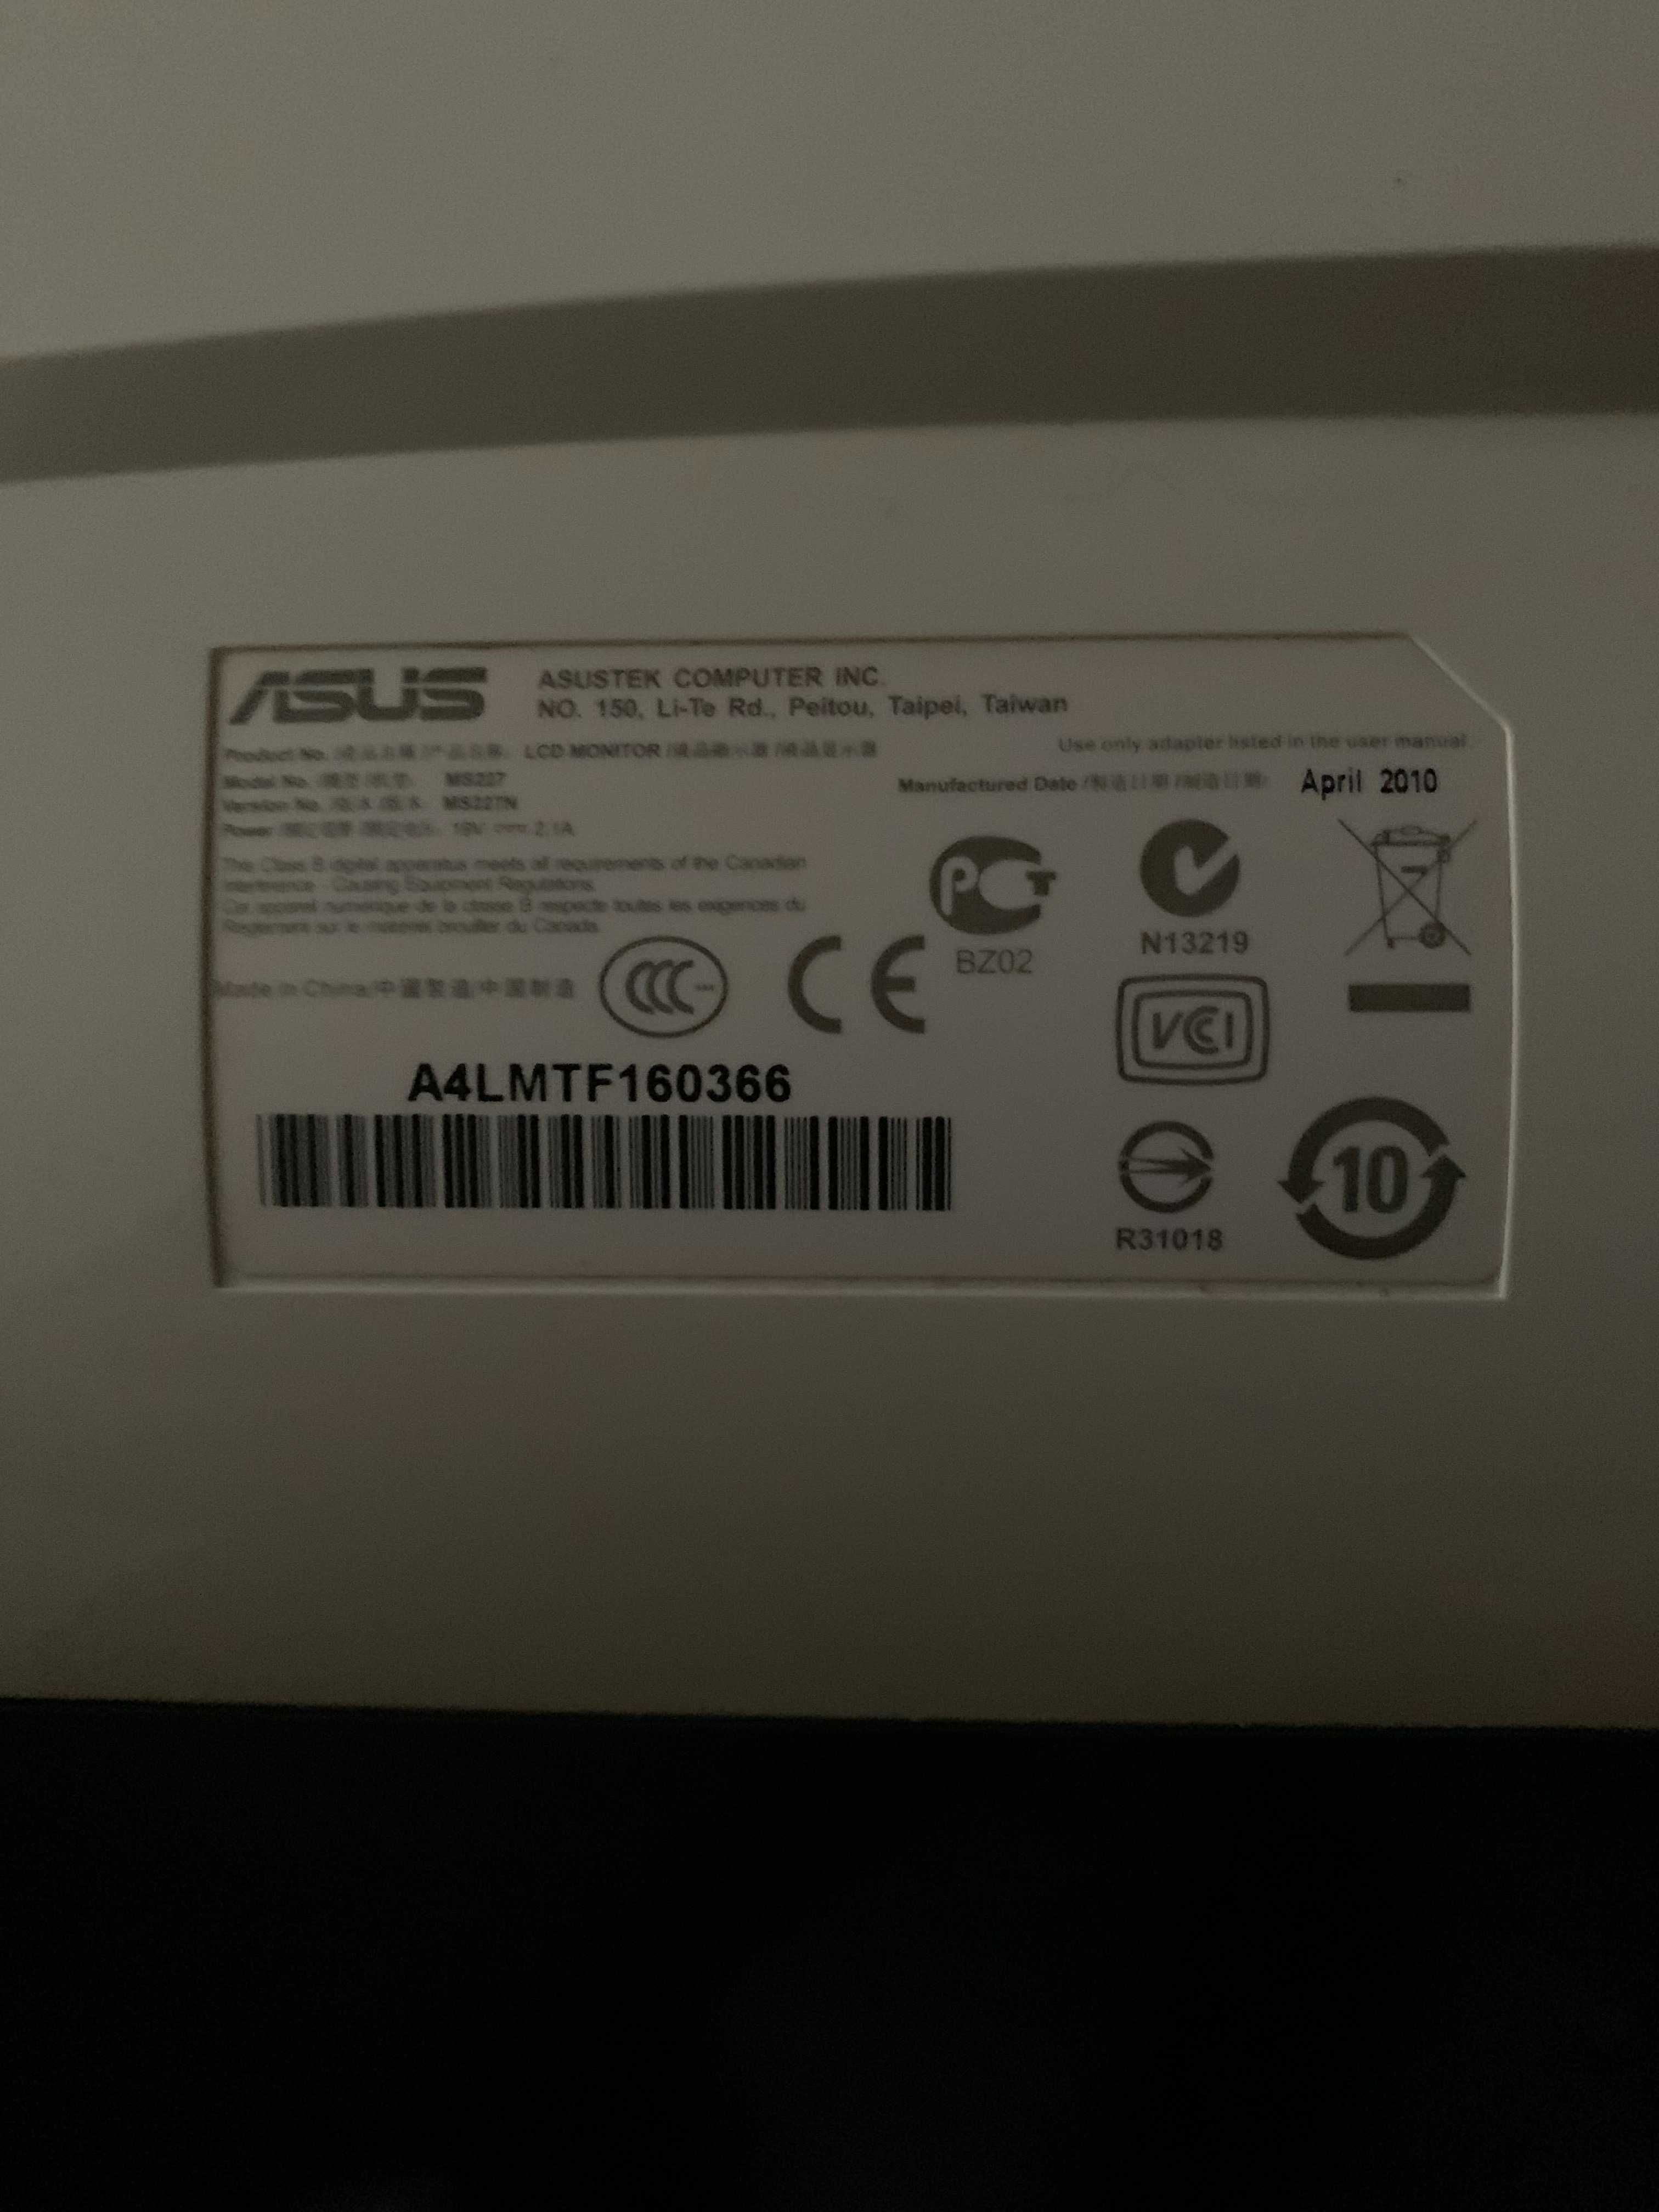 Продам монитор ASUS 22" модель A4LMFT160366